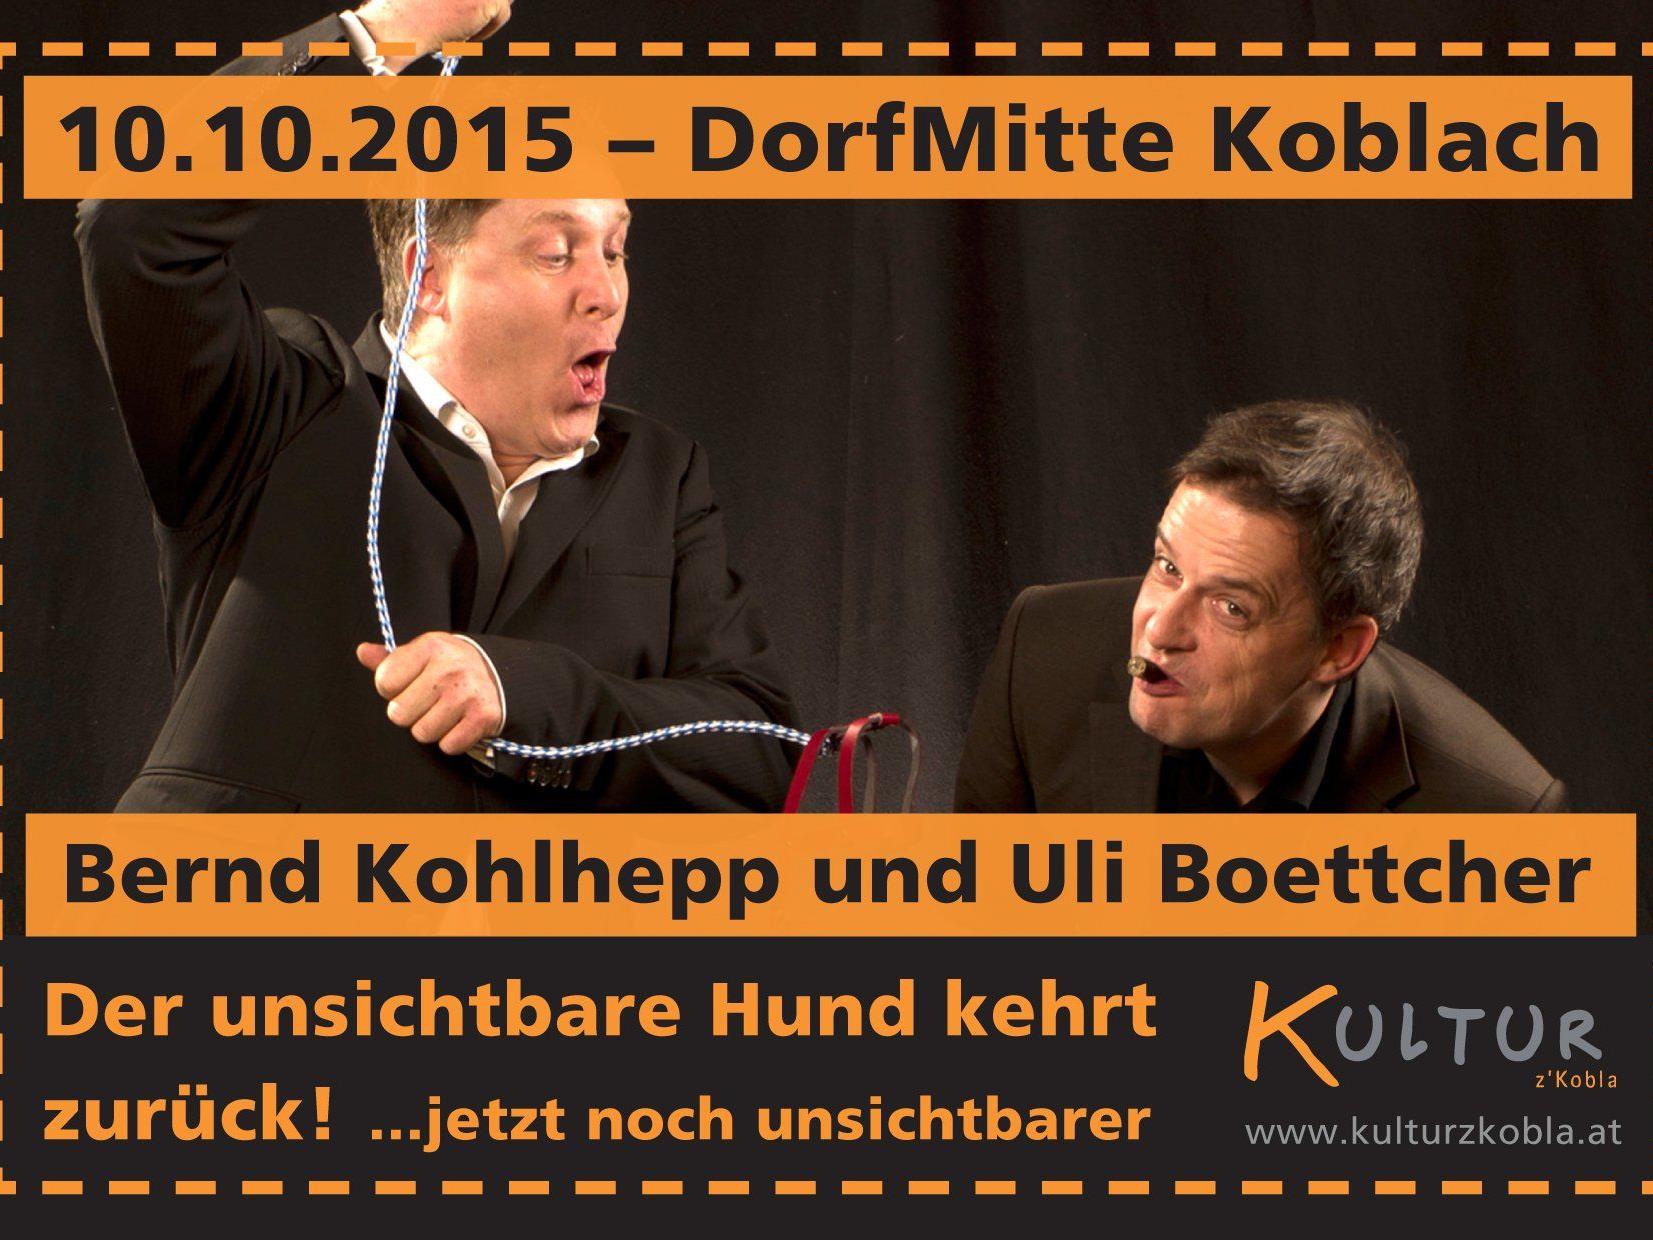 Uli Boettcher und Bernd Kohlhepp sind als Duo mehr als nur doppelt gut.